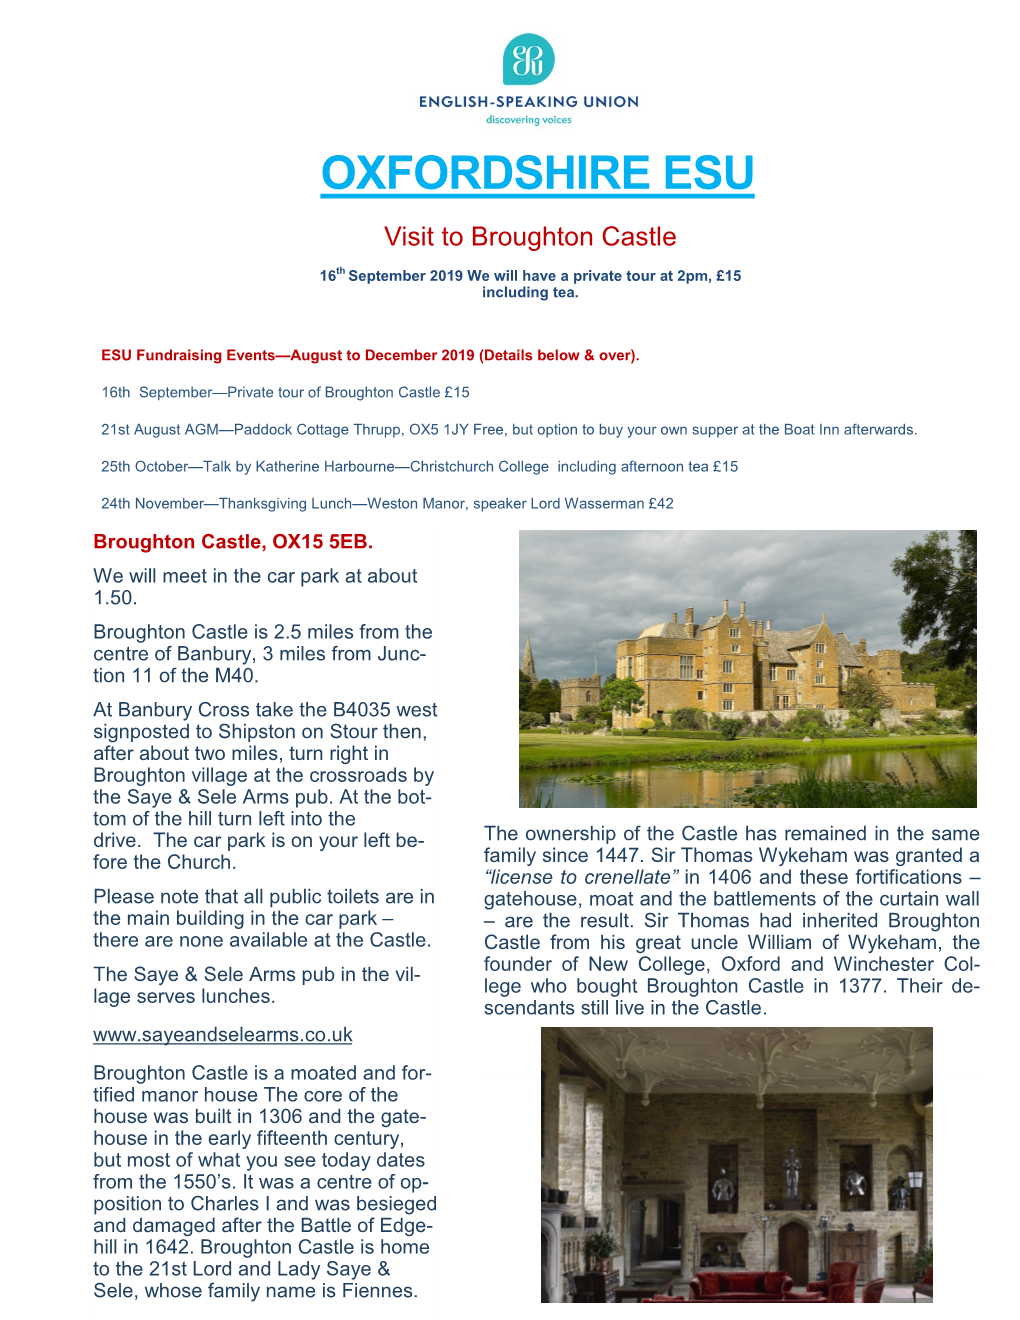 OXFORDSHIRE ESU Visit to Broughton Castle